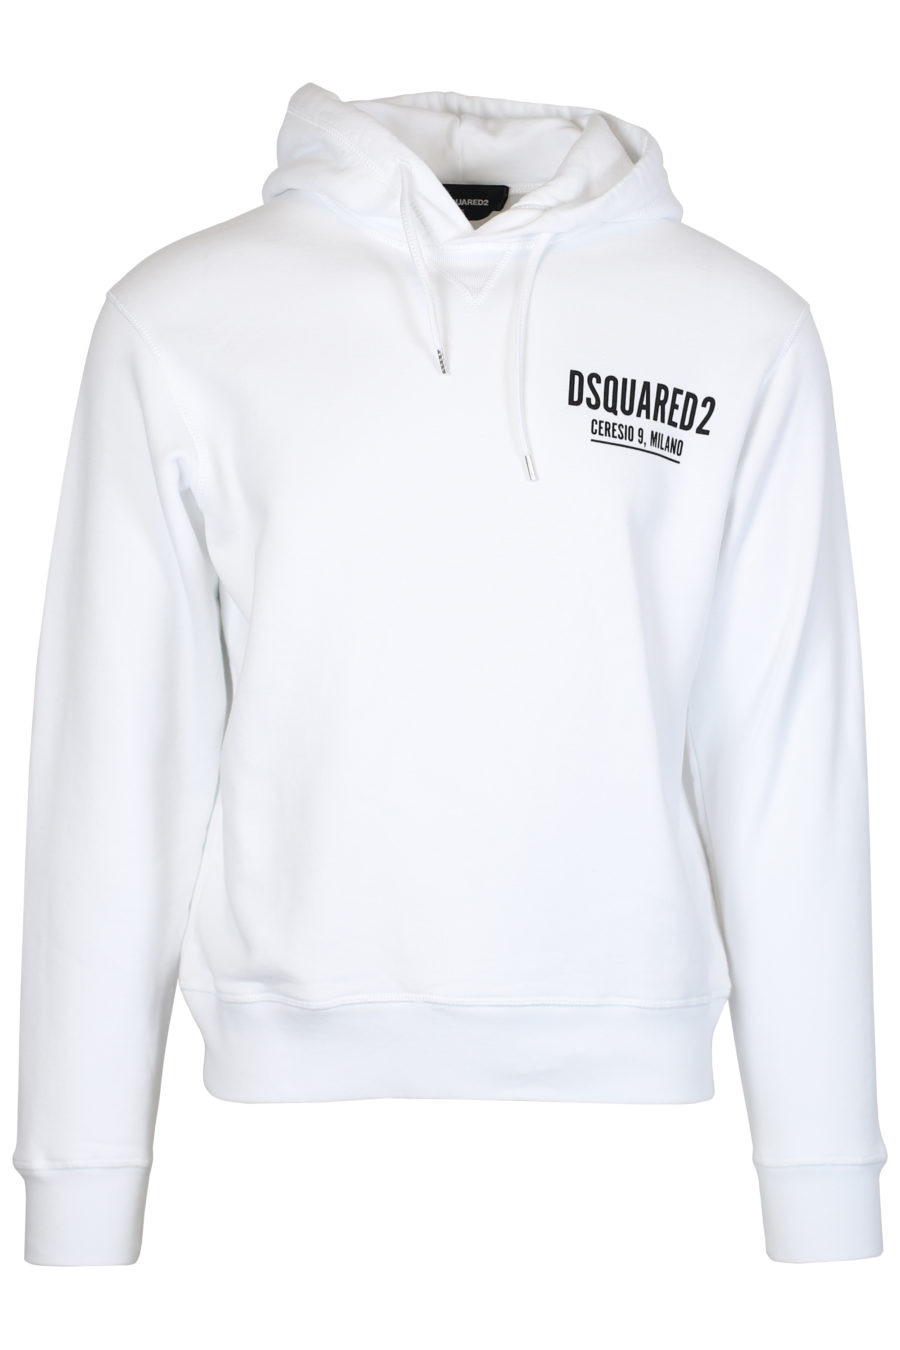 Weißes Kapuzensweatshirt mit kleinem Logo "Ceresio 9" - IMG 2465